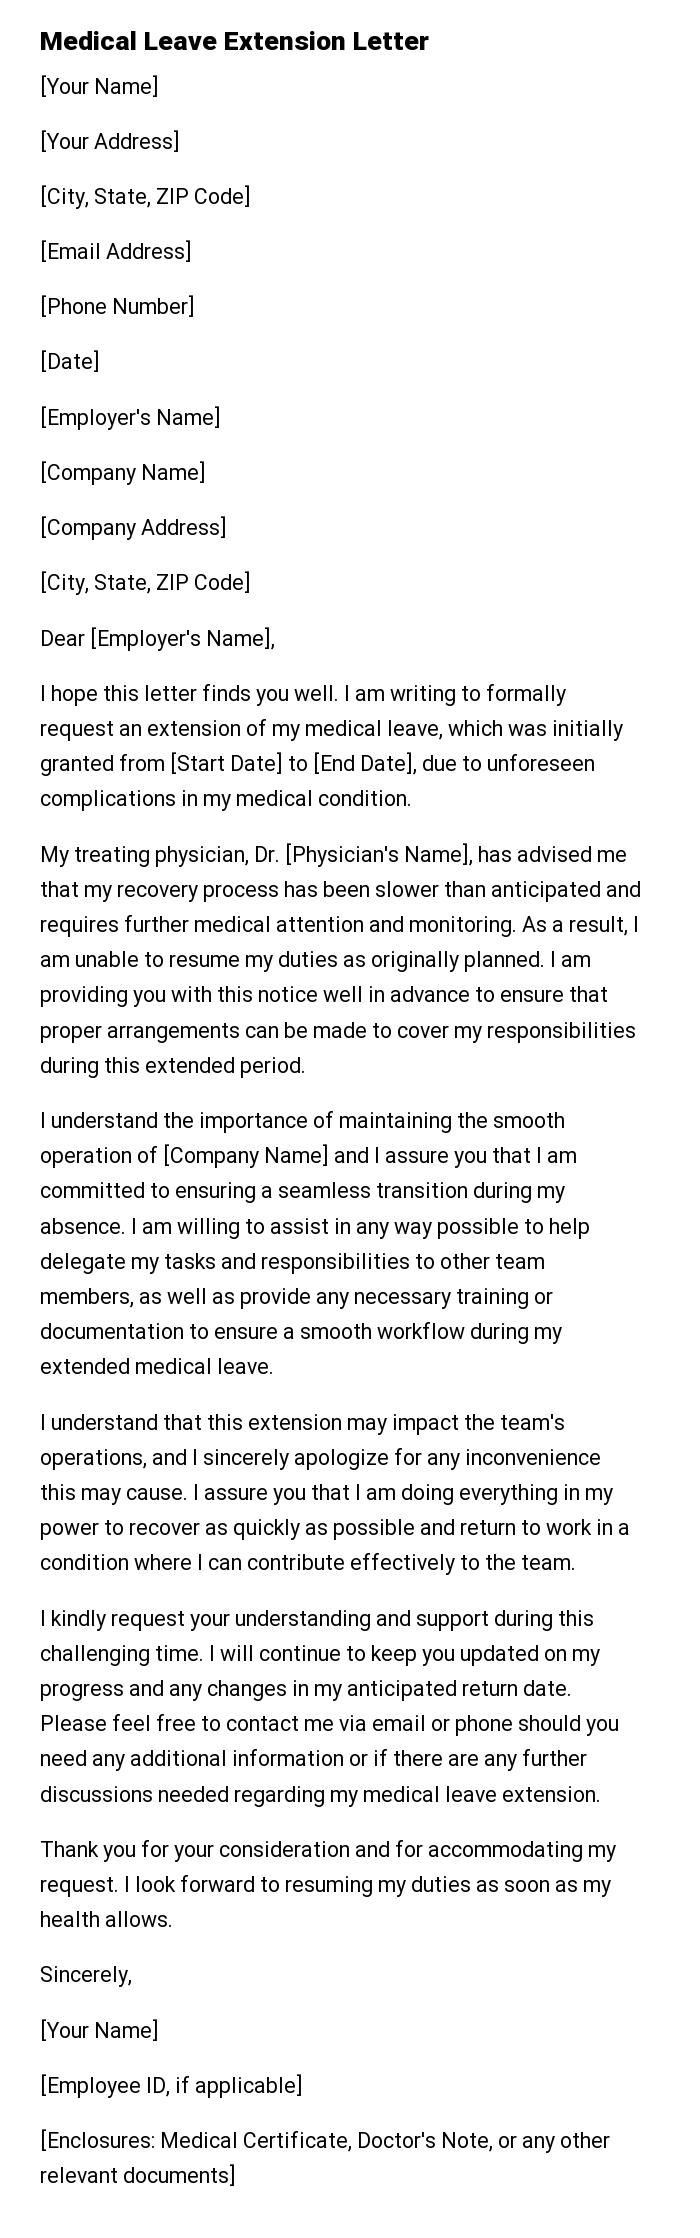 Medical Leave Extension Letter